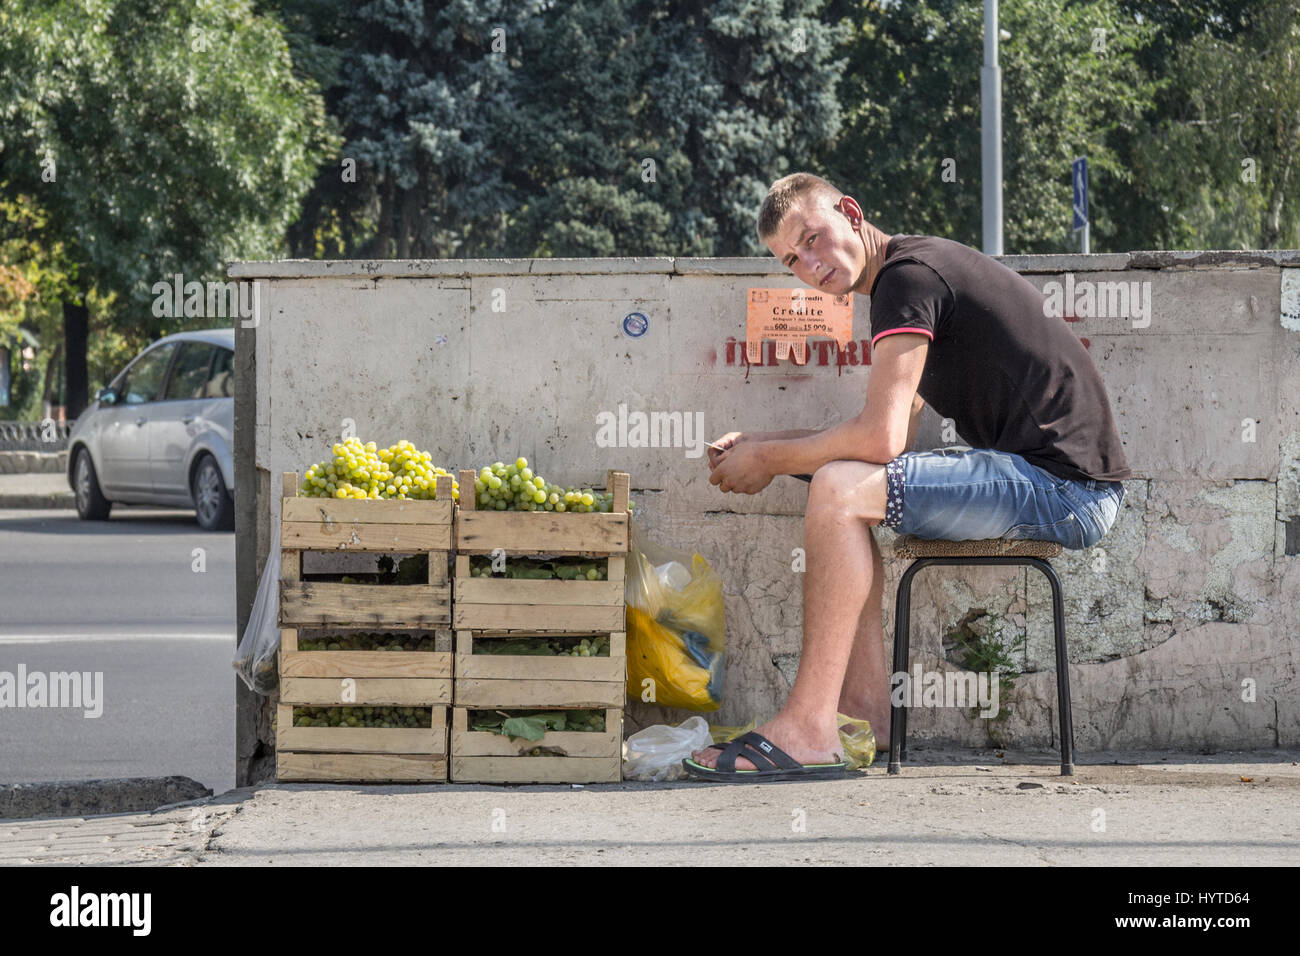 CHISINAU in Moldova - Agosto 11, 2015: giovane uomo seduto su uno sgabello vendita di uve in città capitale della Moldavia. Uva, e i frutti più in generale sono Foto Stock